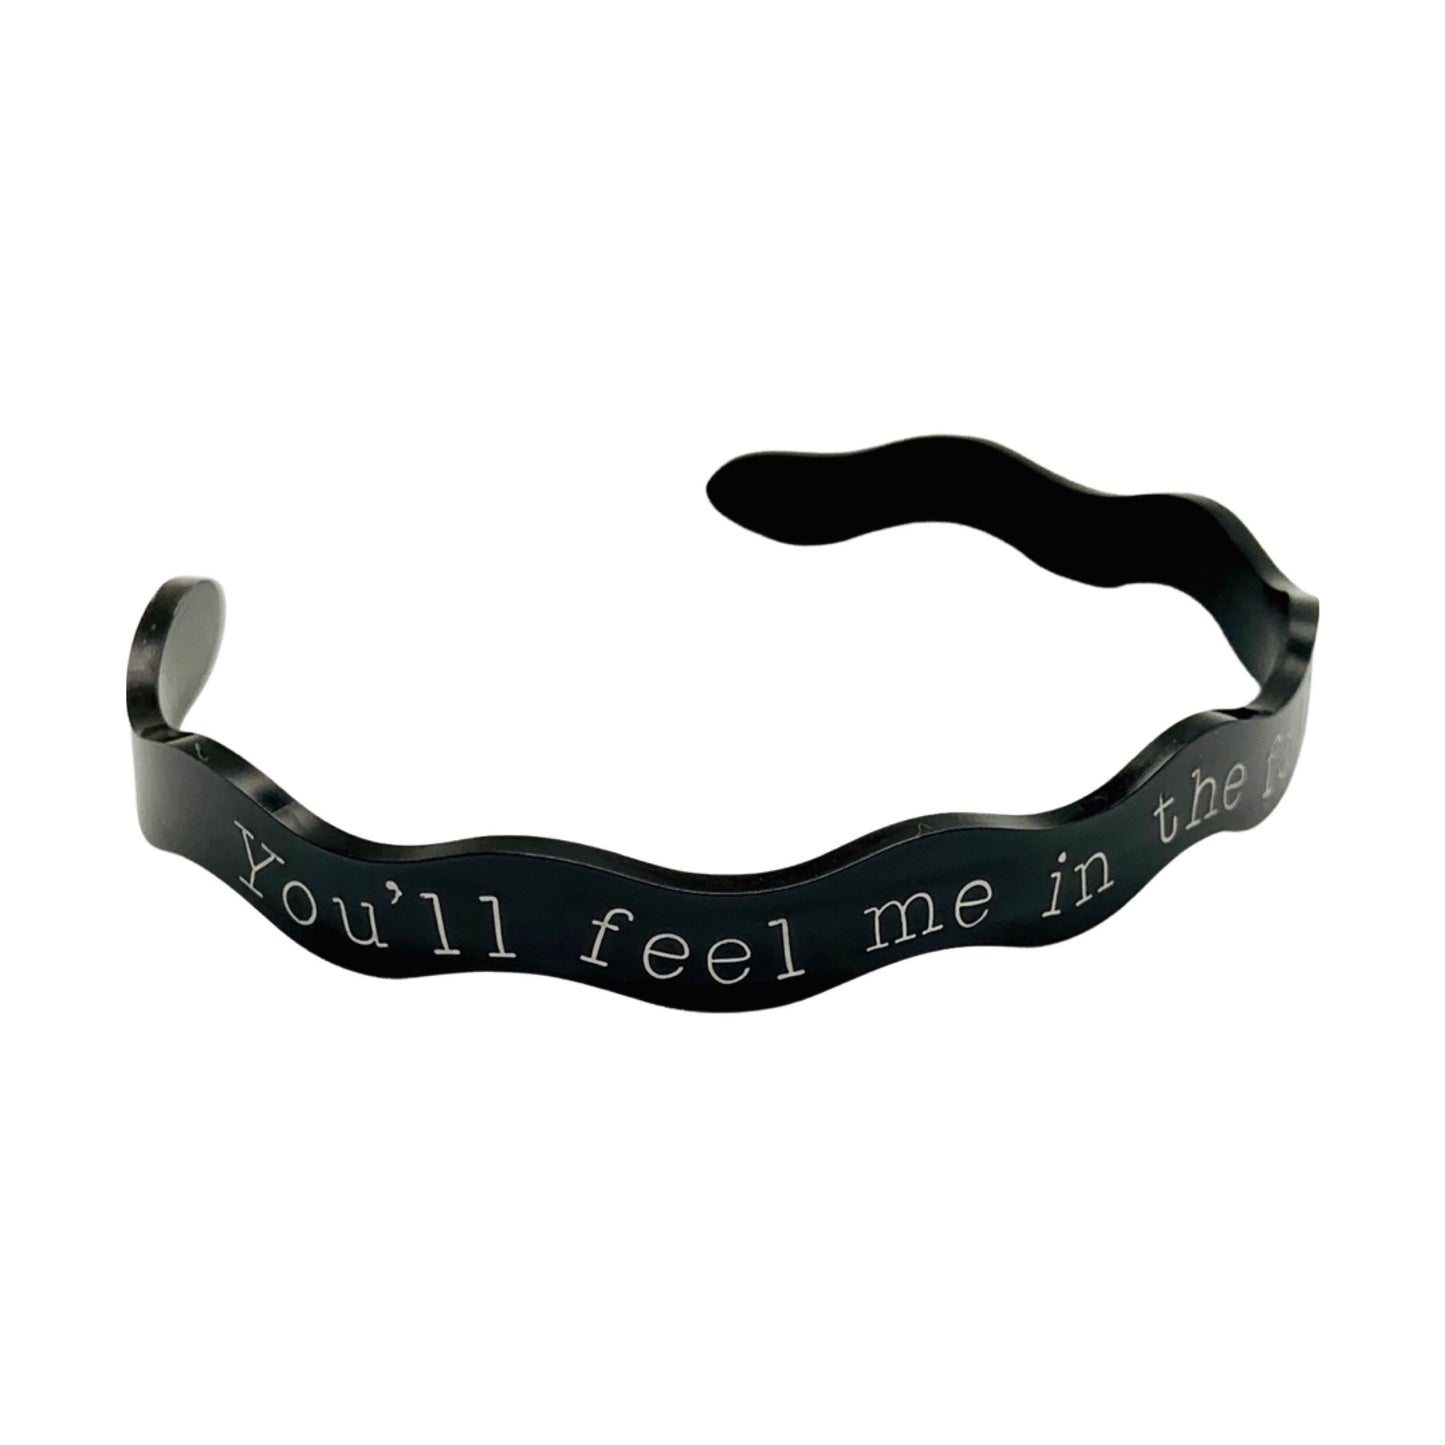 You'll Feel Me in the Fall Backwards (Tarryn Fisher) - Cuff Bracelet